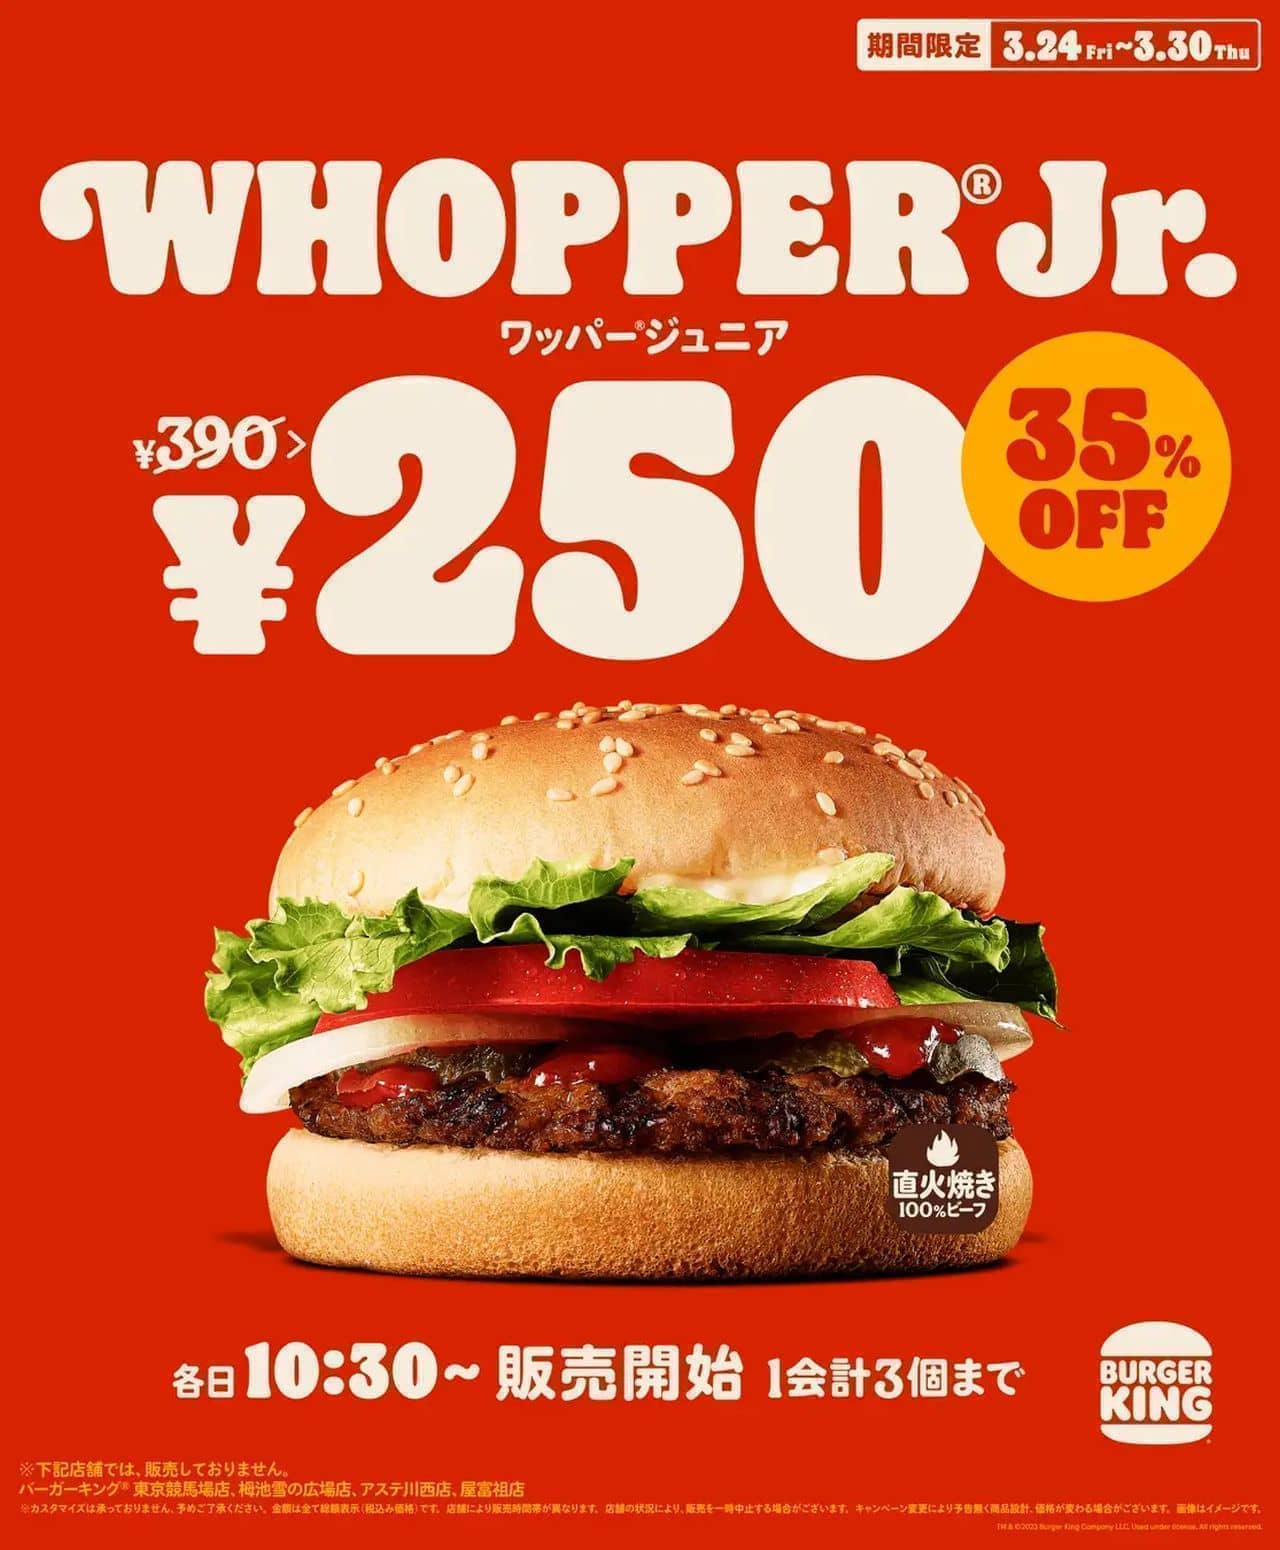 バーガーキング「ワッパー ジュニア 250円キャンペーン」